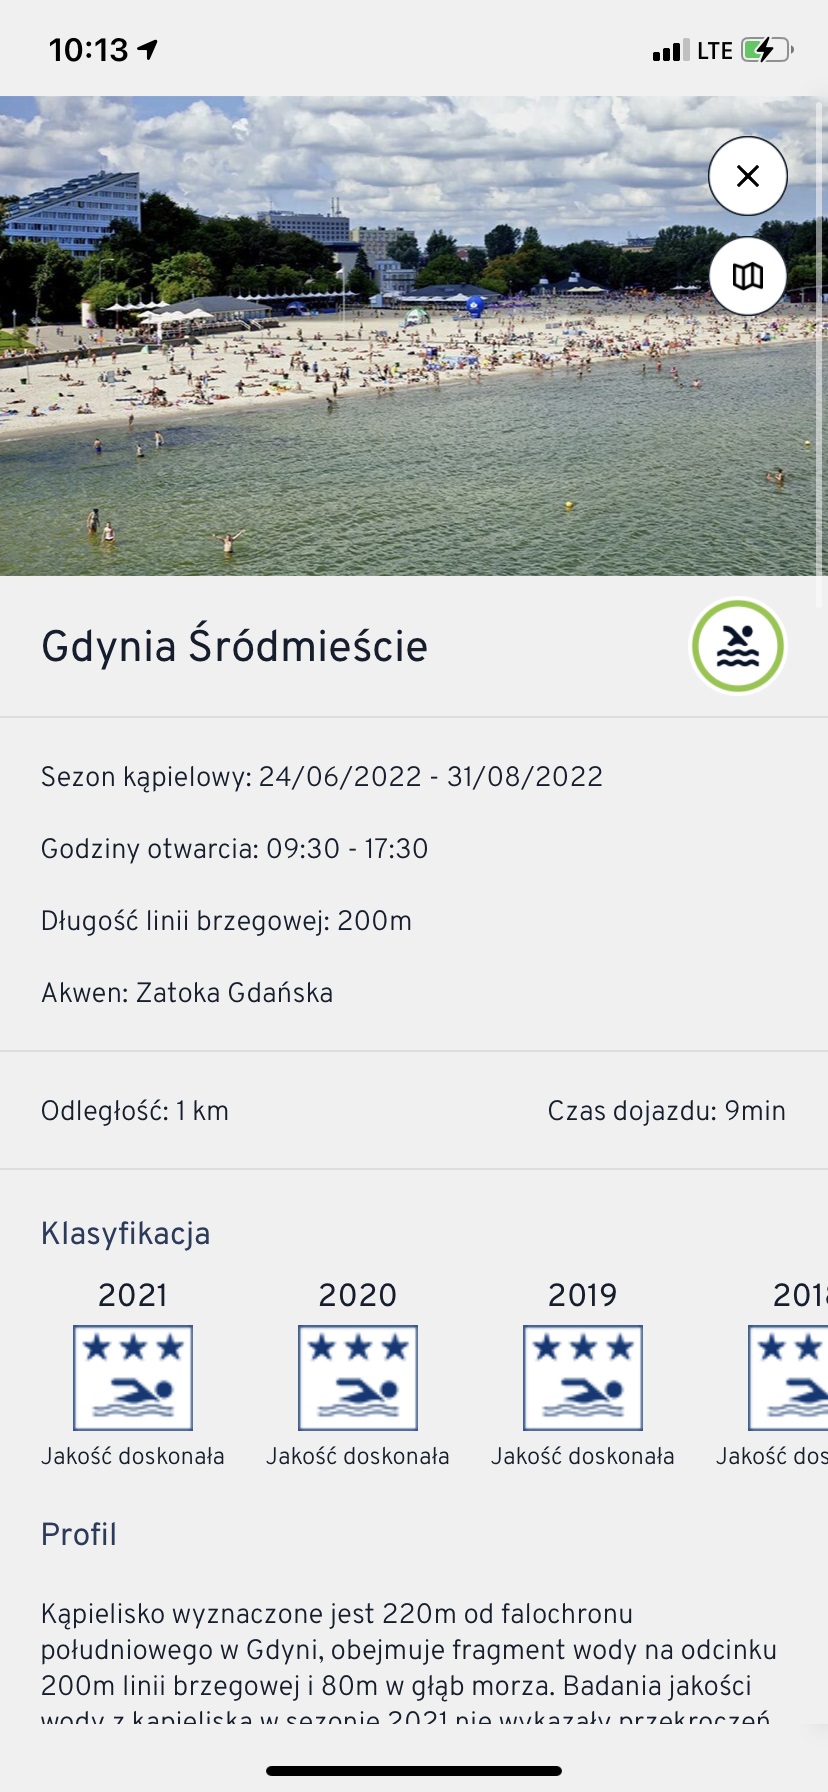 Miejska aplikacja to kolejna możliwość na szybkie sprawdzenie warunków pogodowych na gdyńskich kąpieliskach - wystarczy kilka kliknięć, fot. zrzut ekranu z aplikacji Gdynia.pl